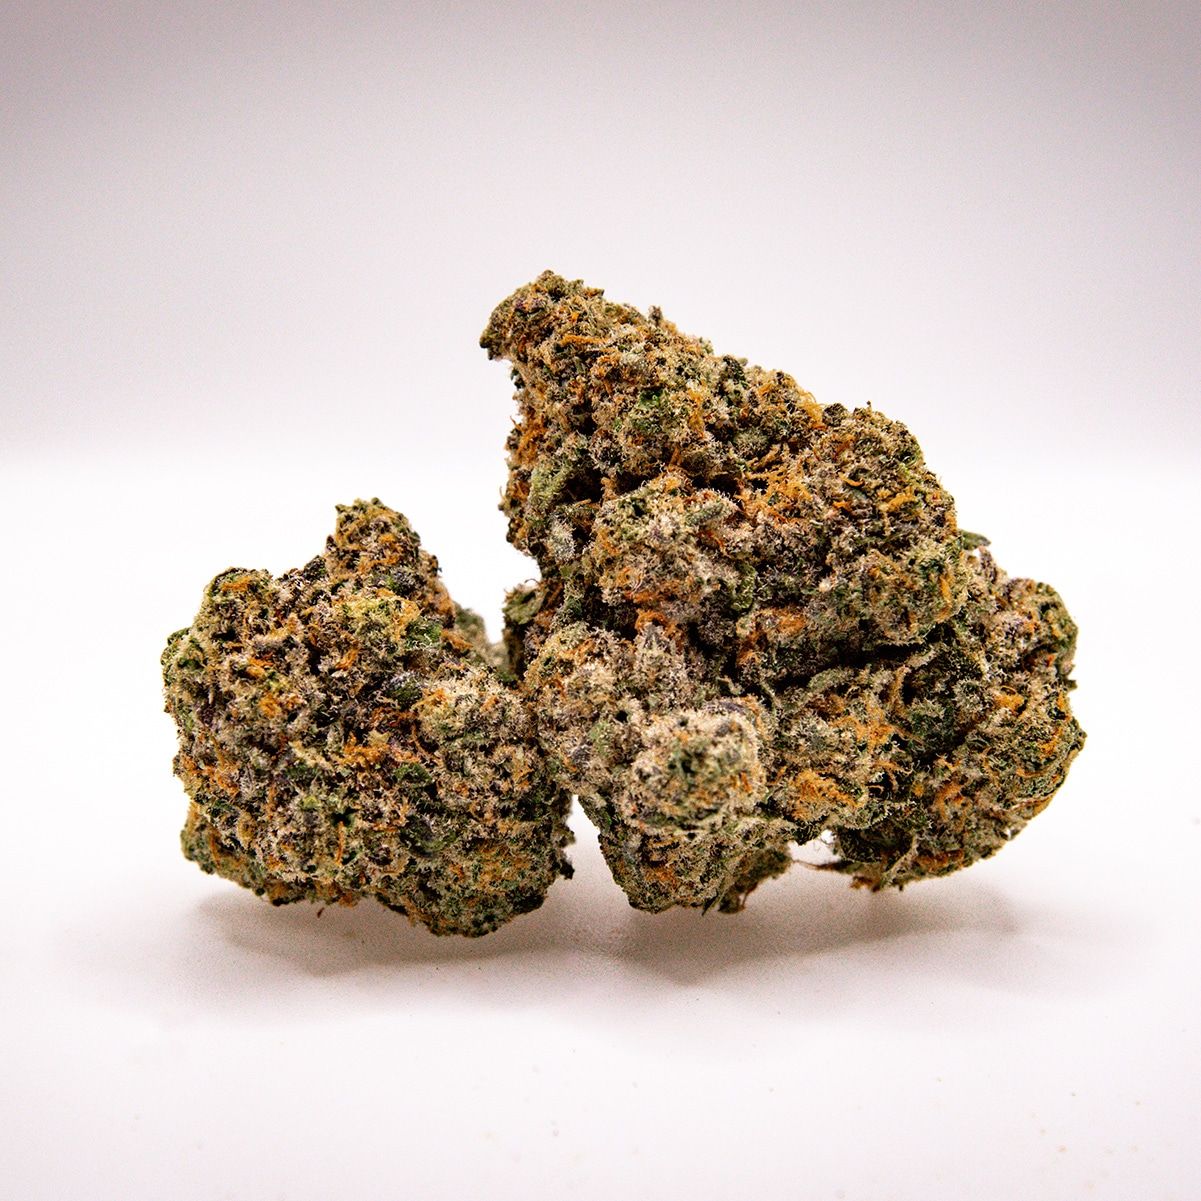 emerald kush cannabis flower